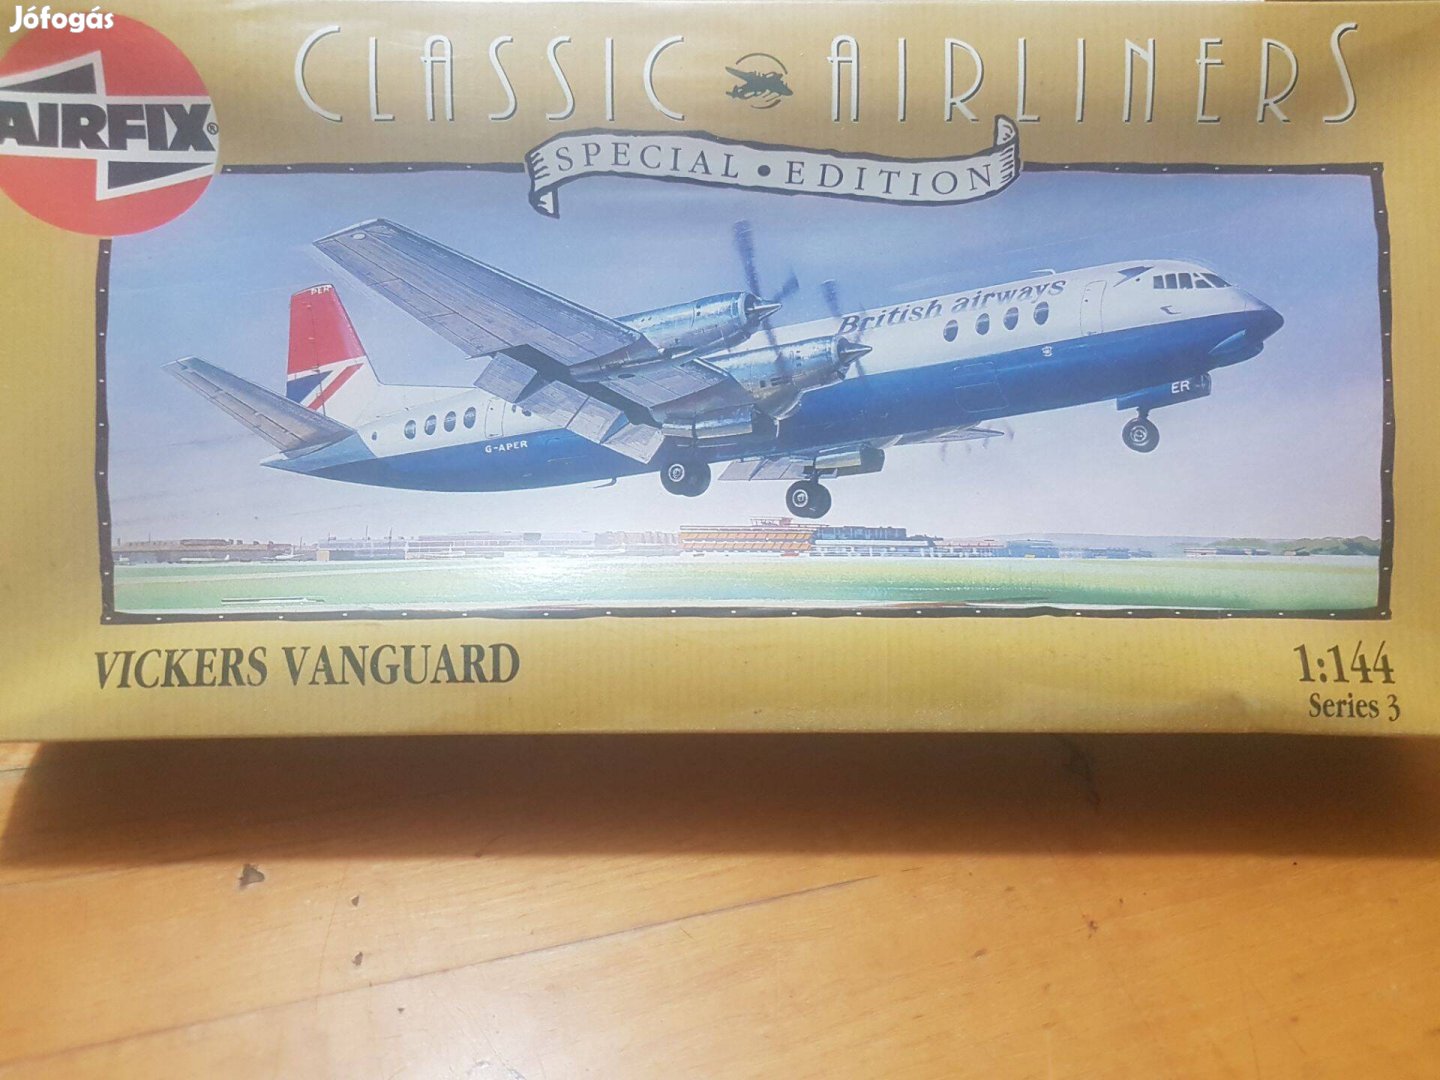 Makett Vickers Vanguard Airfix Classic Airline